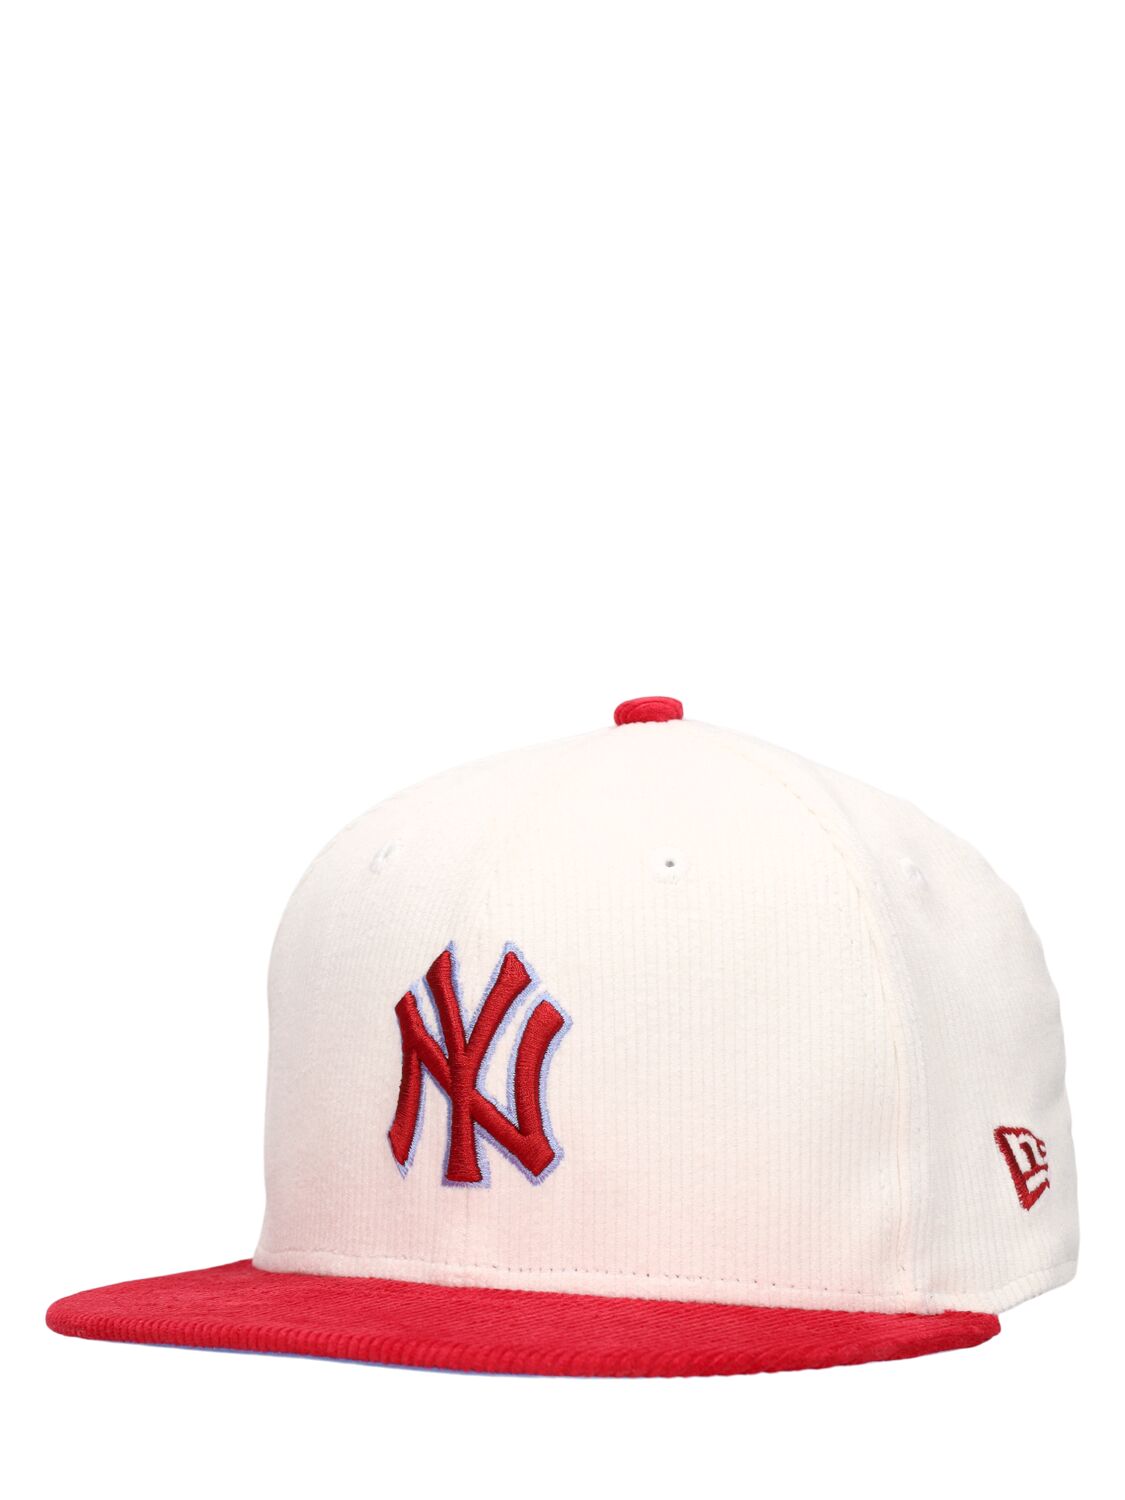 NY YANKEES 59FIFTY棒球帽